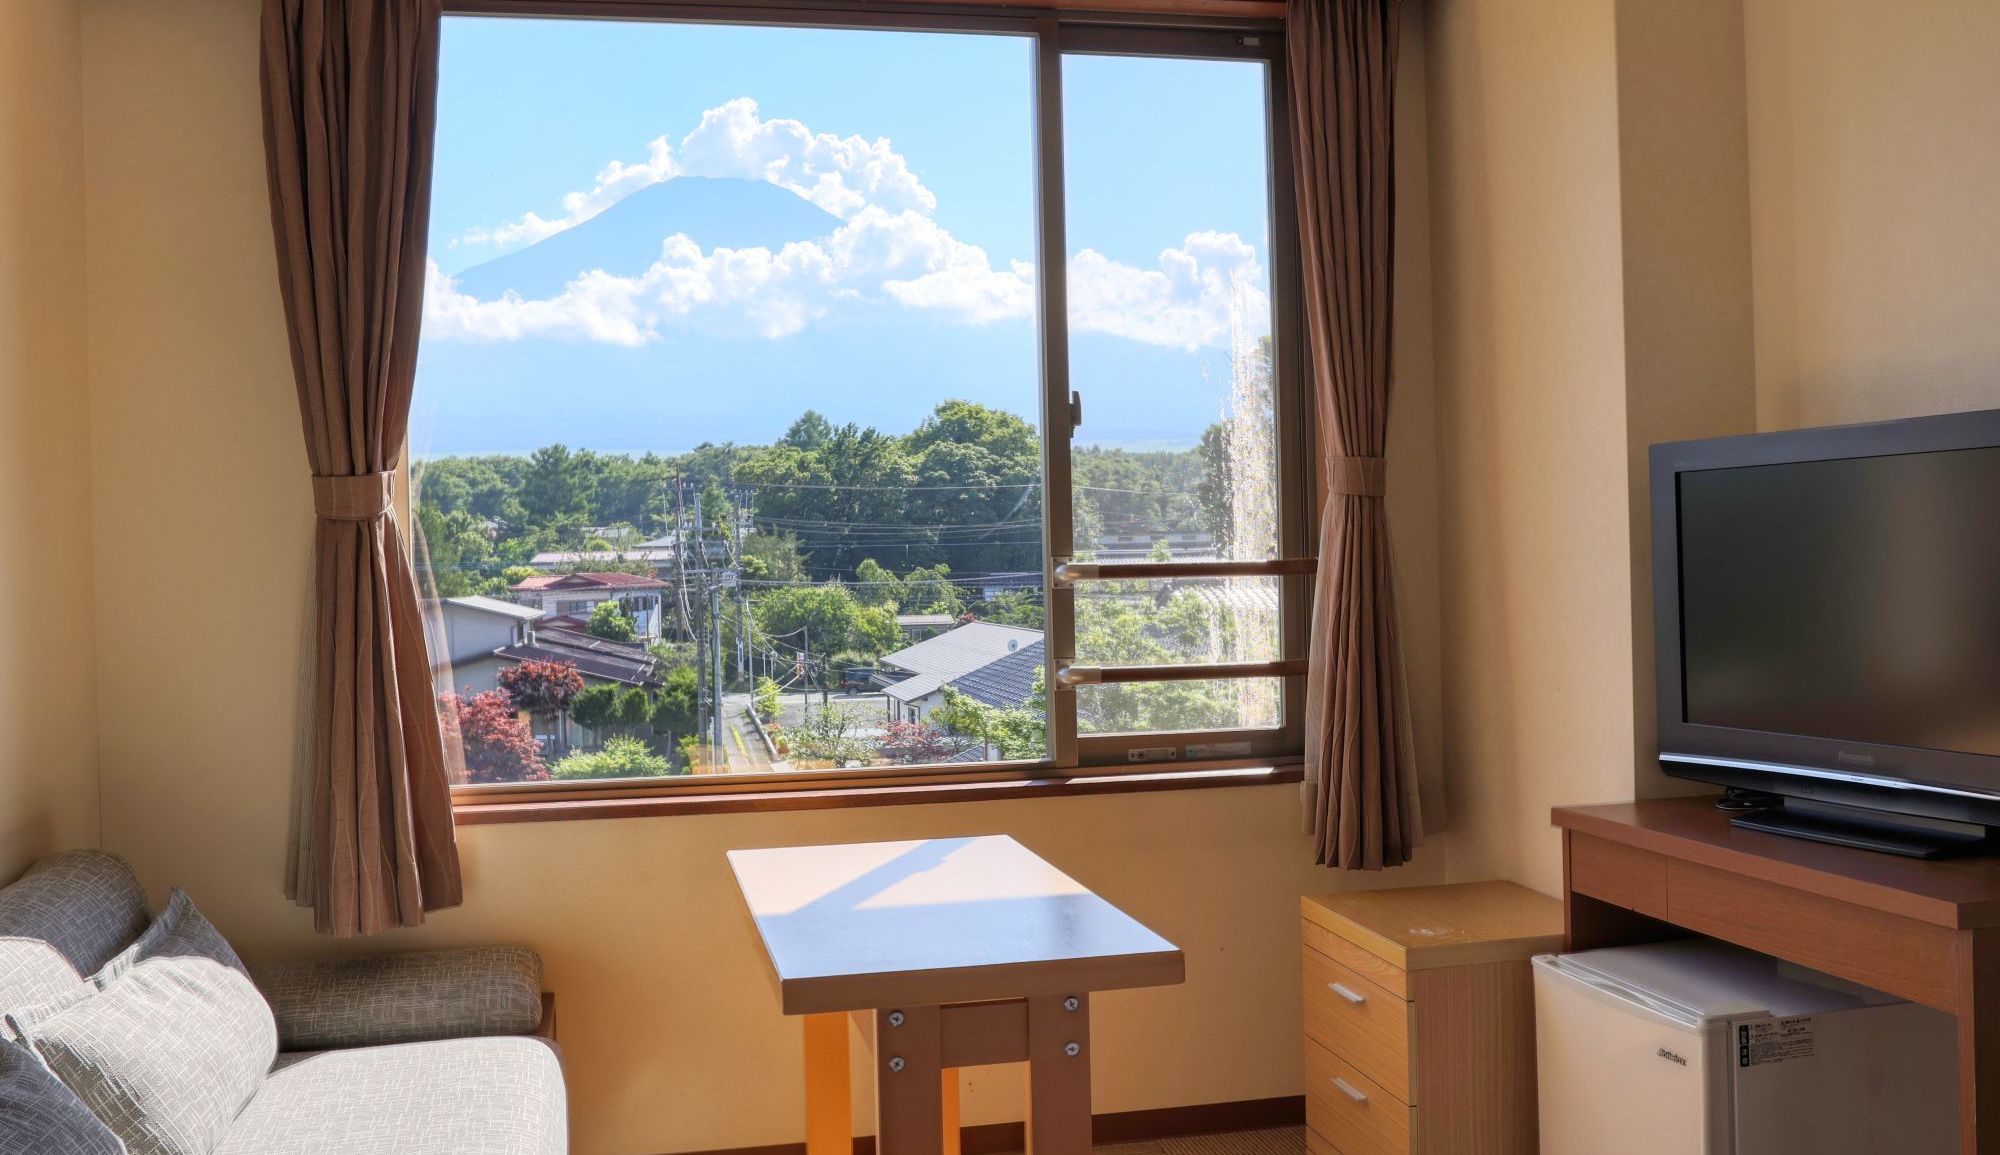 【富士山ビュー客室】晴れの日は美しい富士山の景観がお部屋の窓からご覧いただけます。